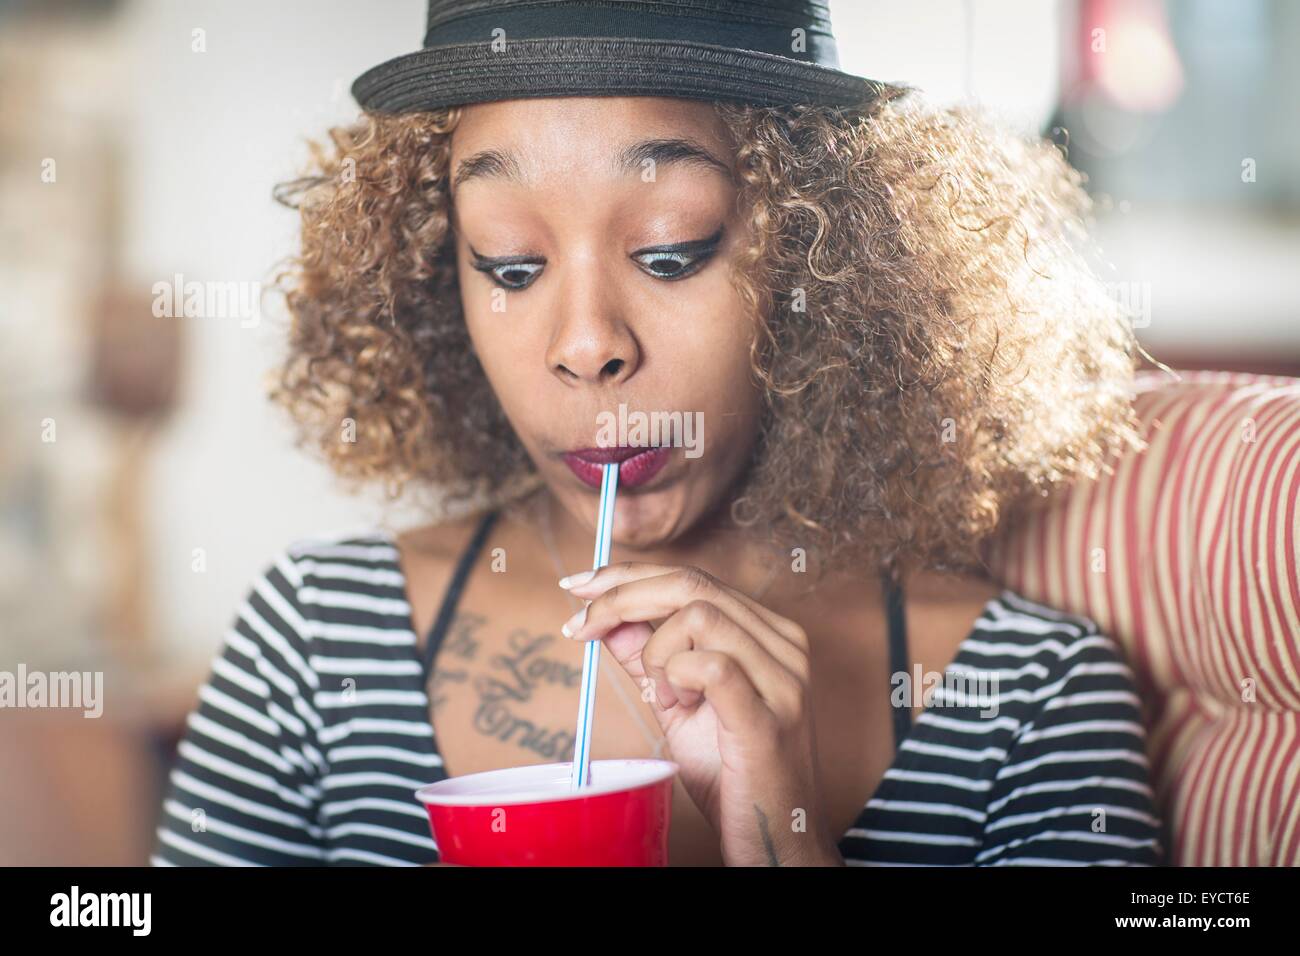 Porträt der jungen Frau ein Gesicht ziehen, während alkoholfreies Getränk trinken Stockfoto